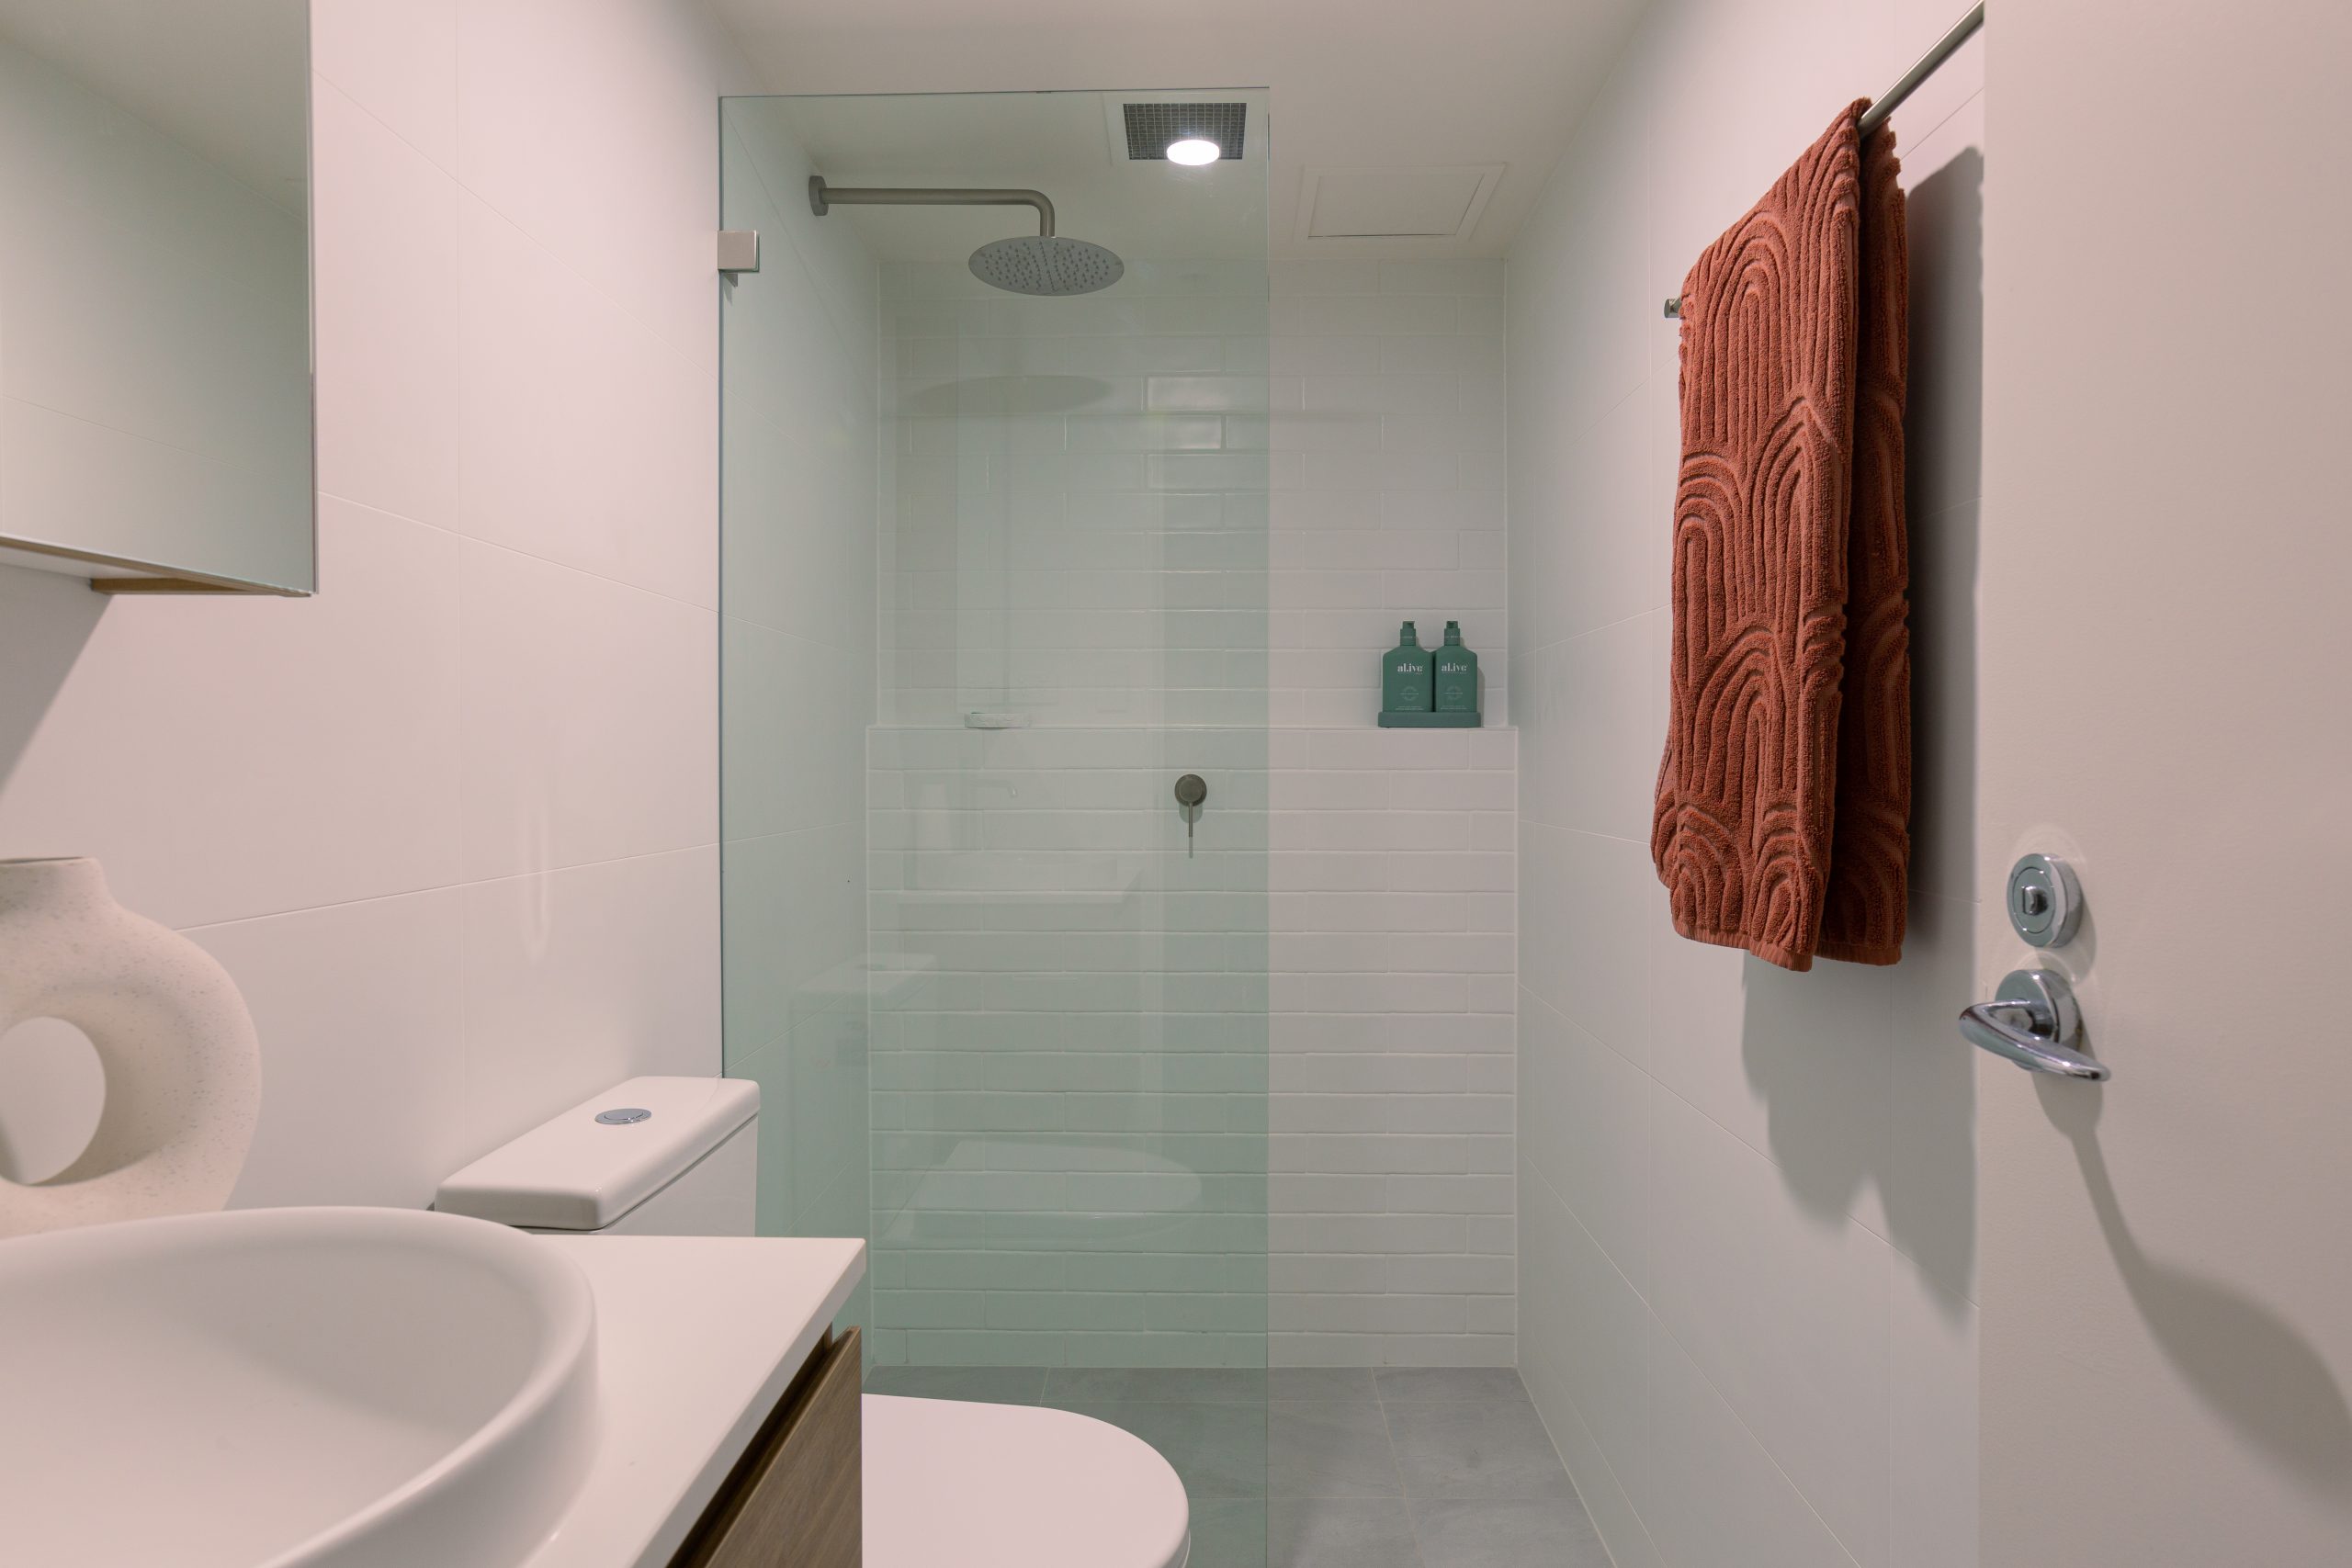 How Can I Modernize My Bathroom Cheaply?